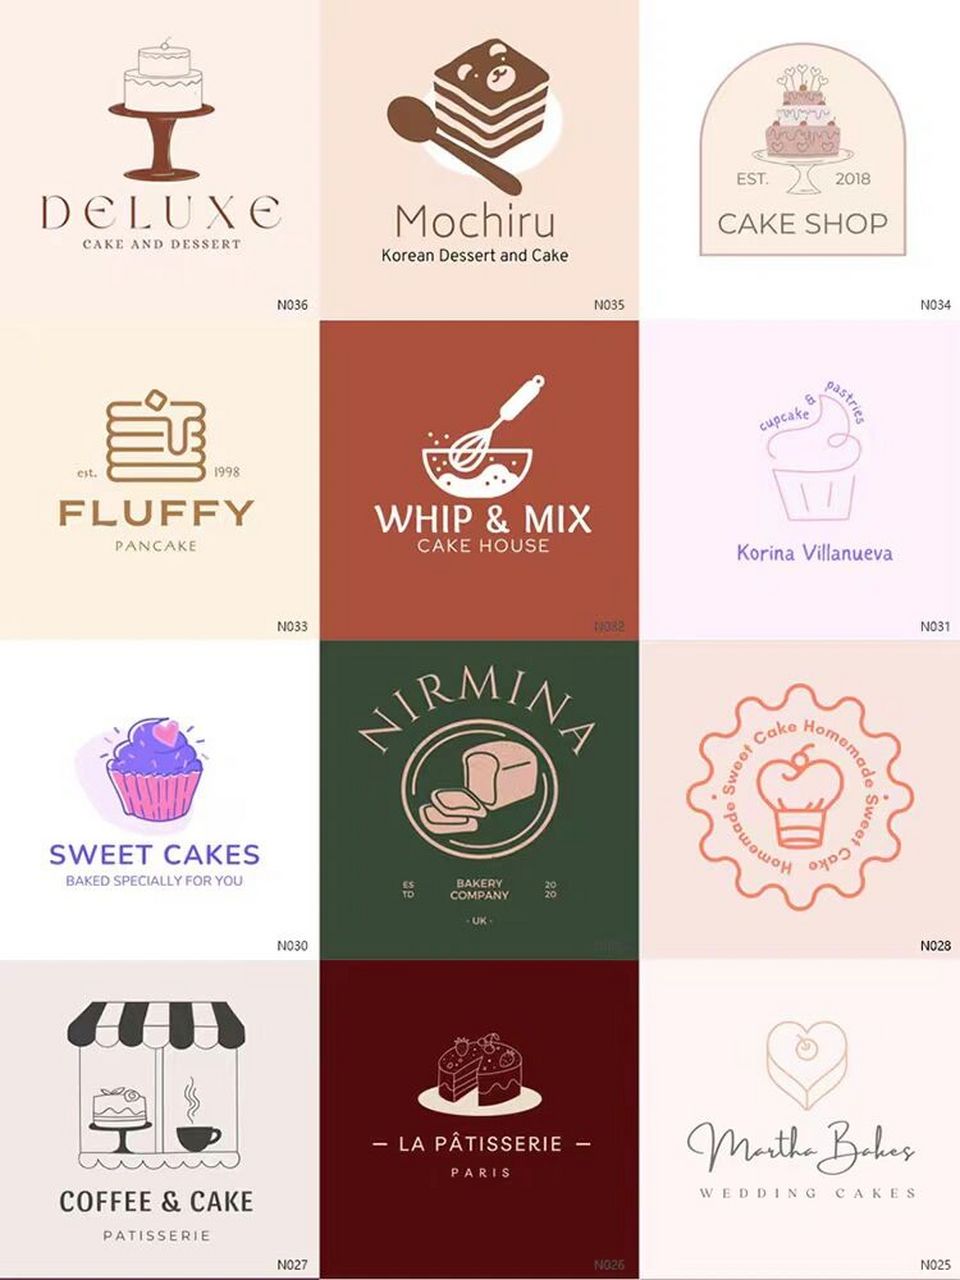 甜品店logo设计理念图片